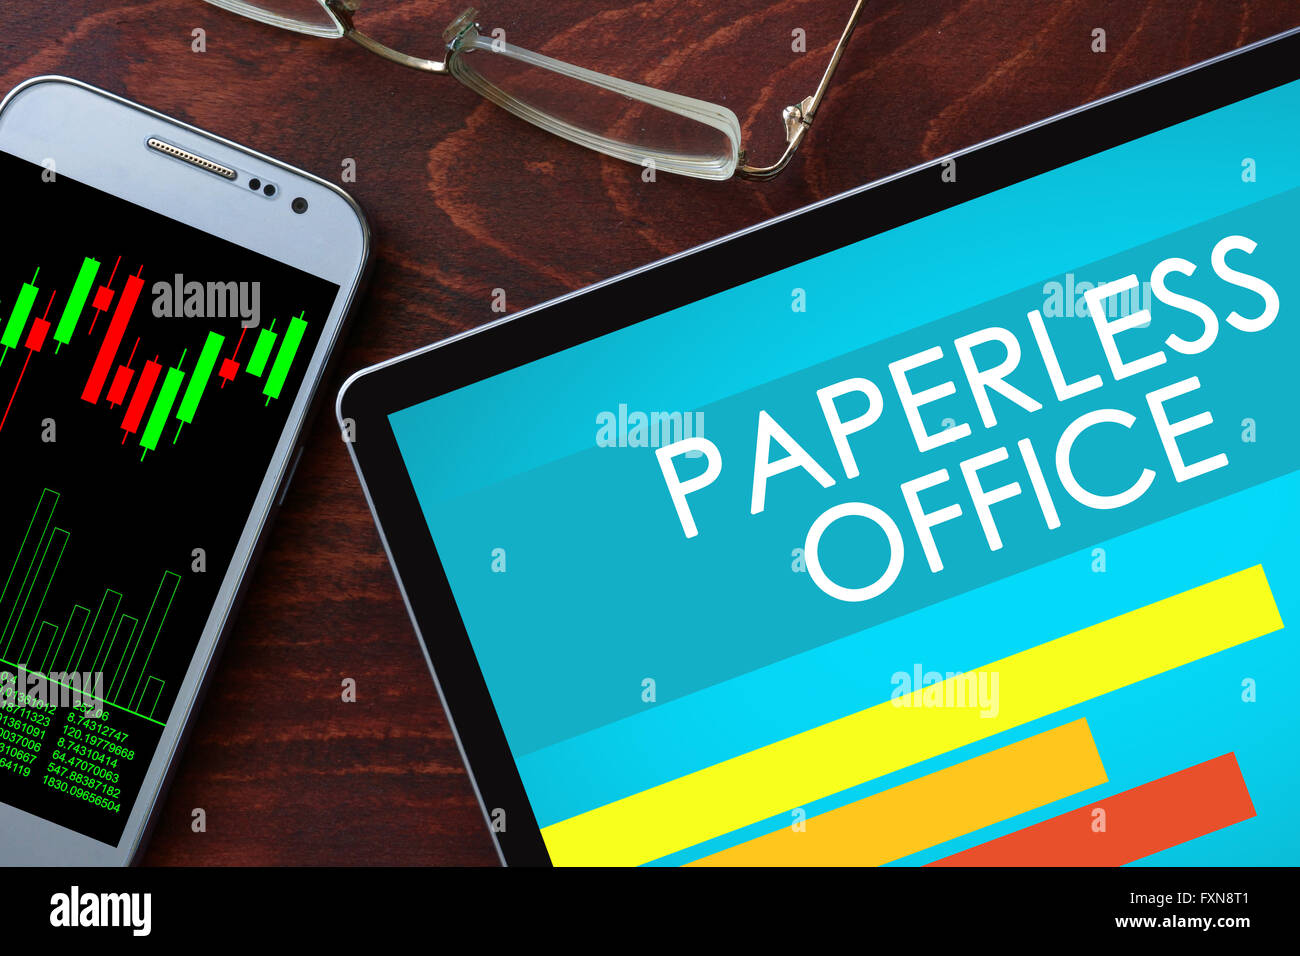 Papierloses Büro geschrieben auf einem Tablet. Business-Konzept. Stockfoto